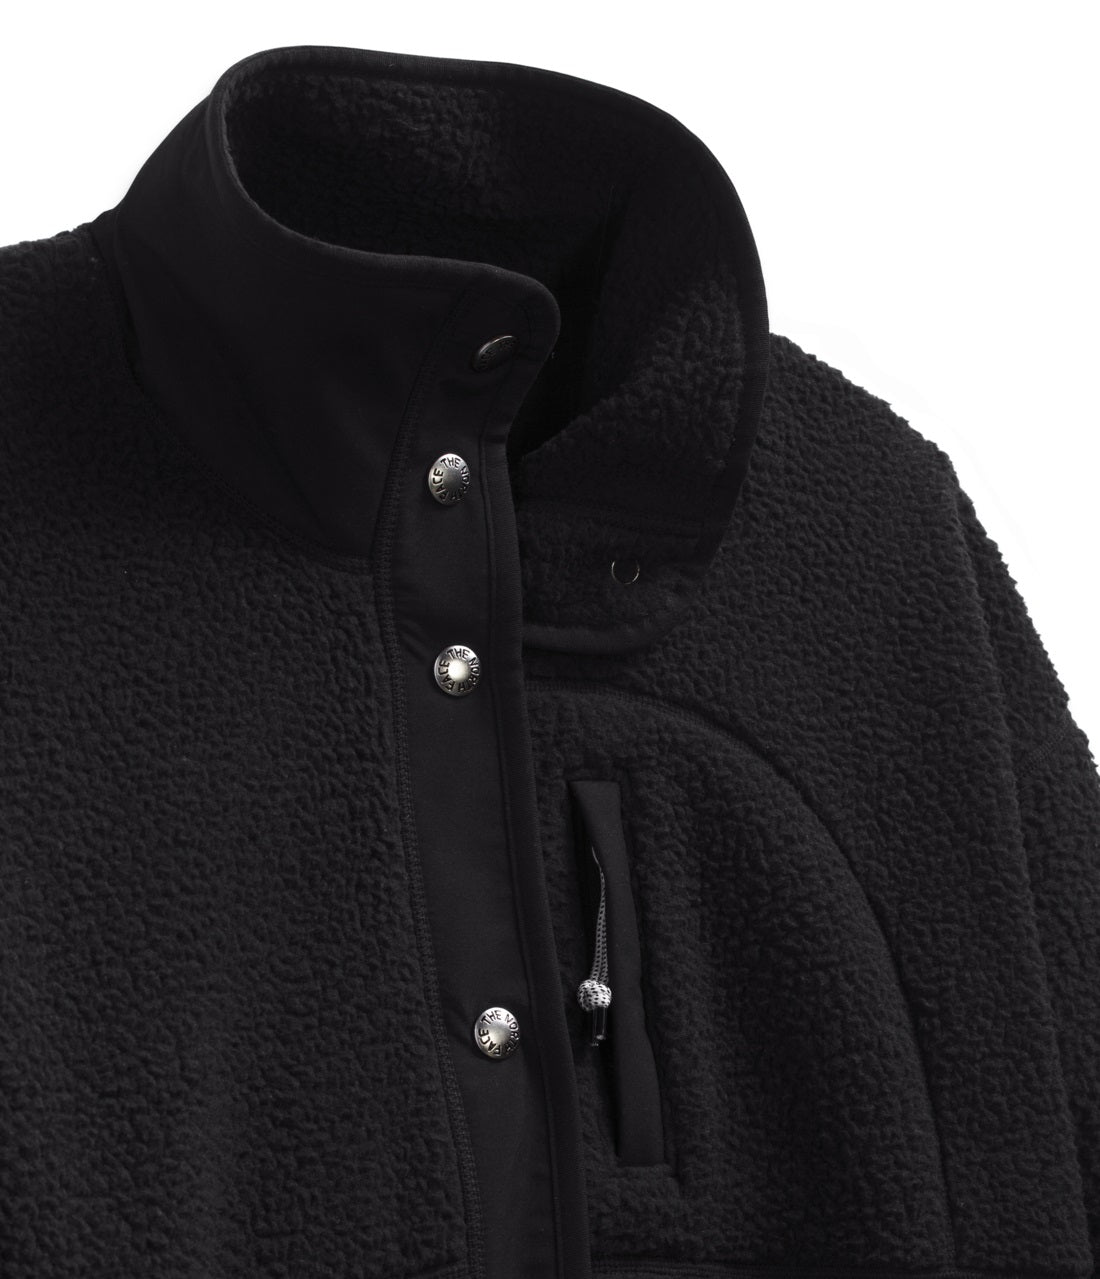 Cragmont Fleece Jacket